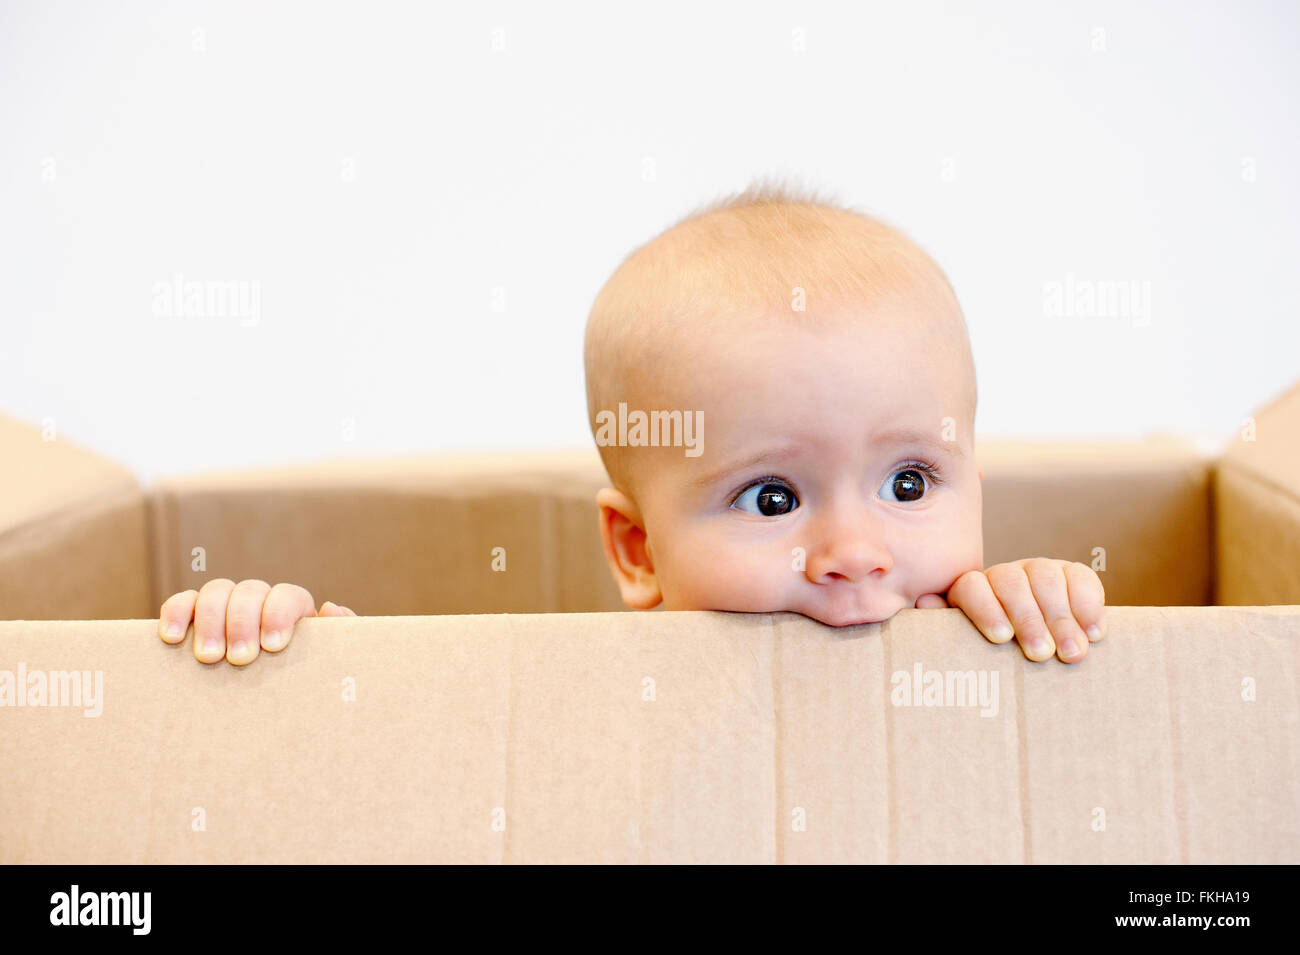 Baby todler in a carton box Stock Photo